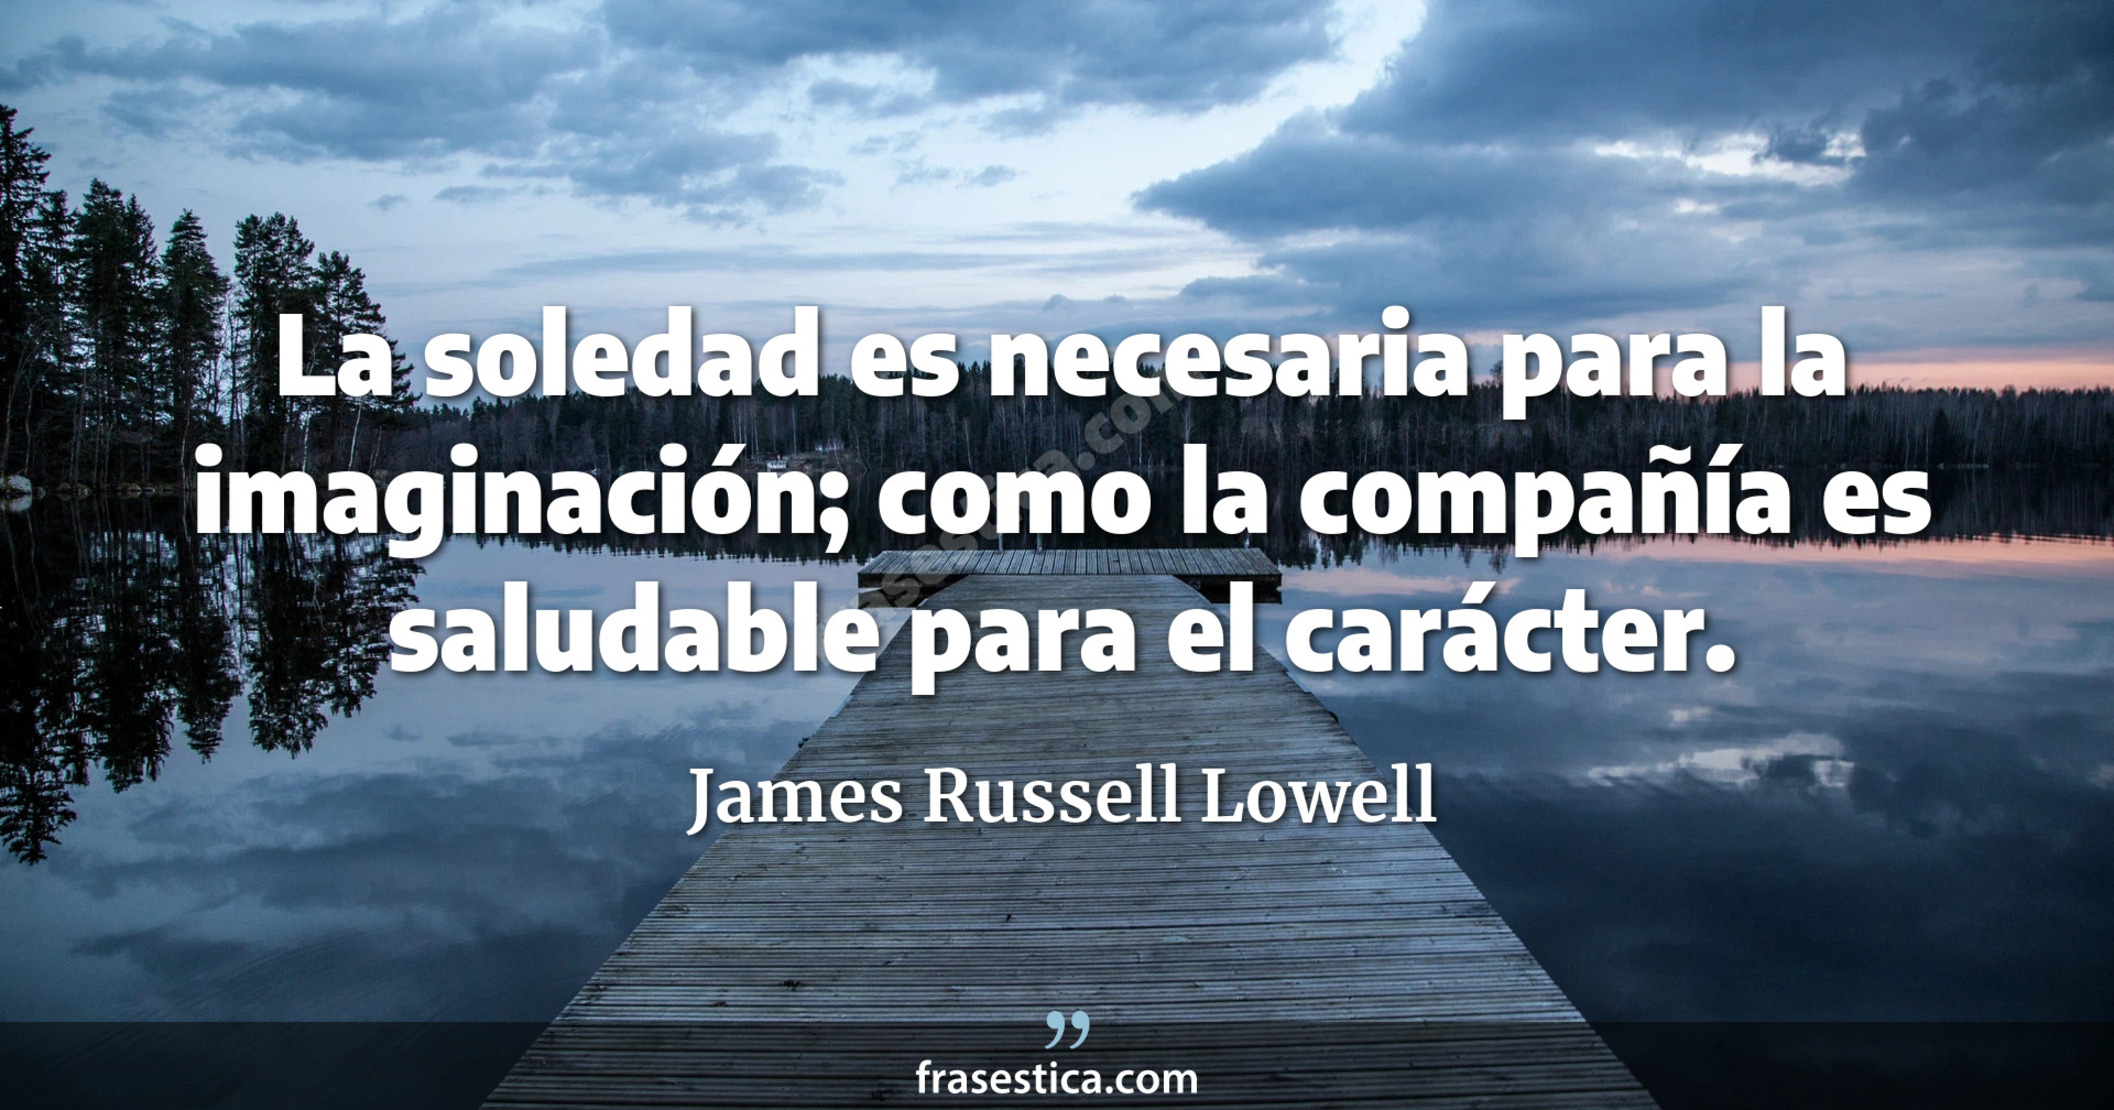 La soledad es necesaria para la imaginación; como la compañía es saludable para el carácter. - James Russell Lowell